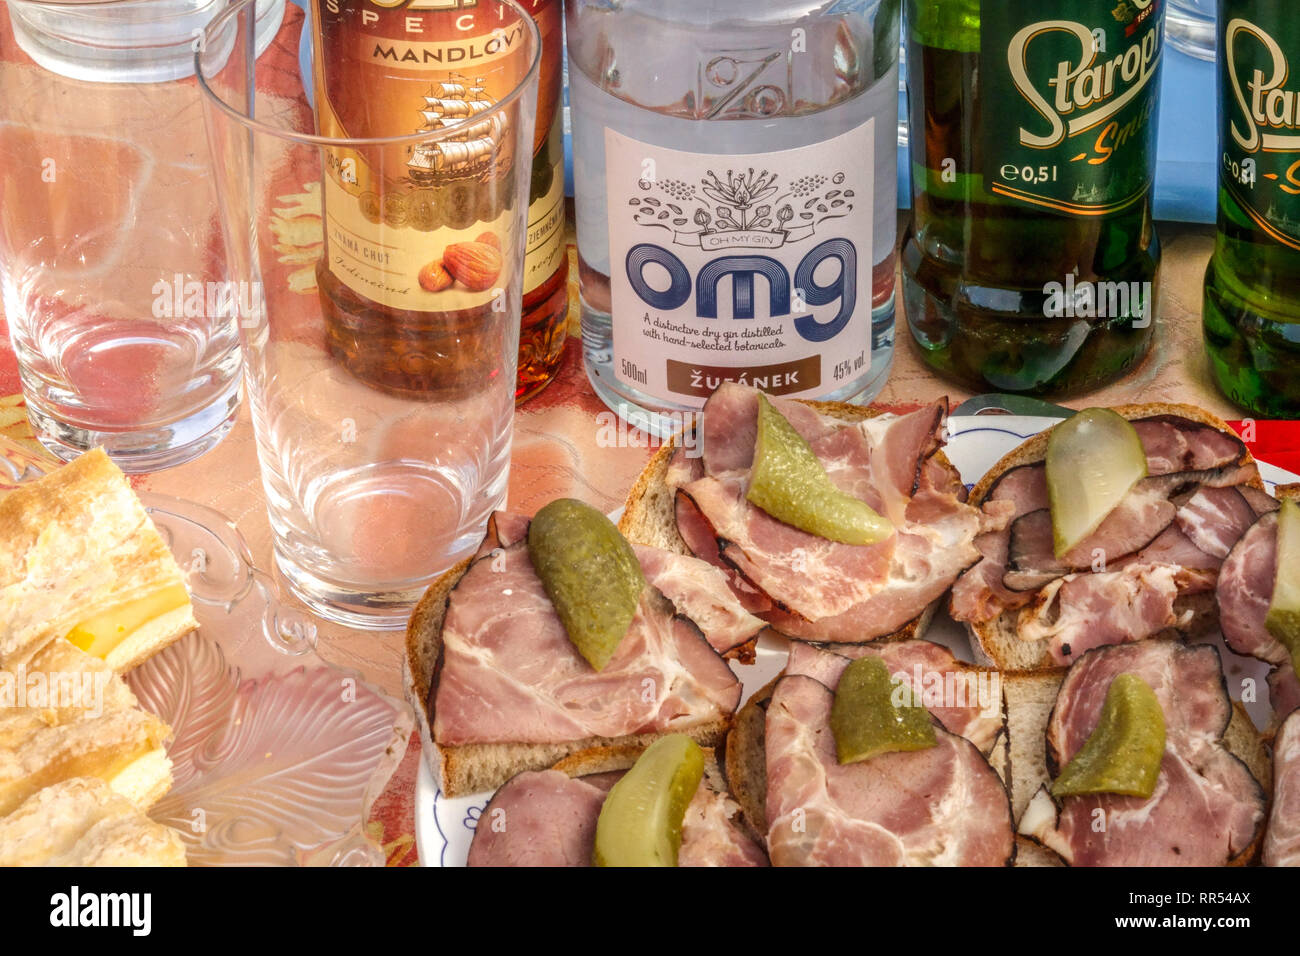 Tchèque, une table avec des sandwichs, de l'alcool, préparé pour la bière tchèque, les participants du Carnaval Carnaval - masopust dans village rural Banque D'Images